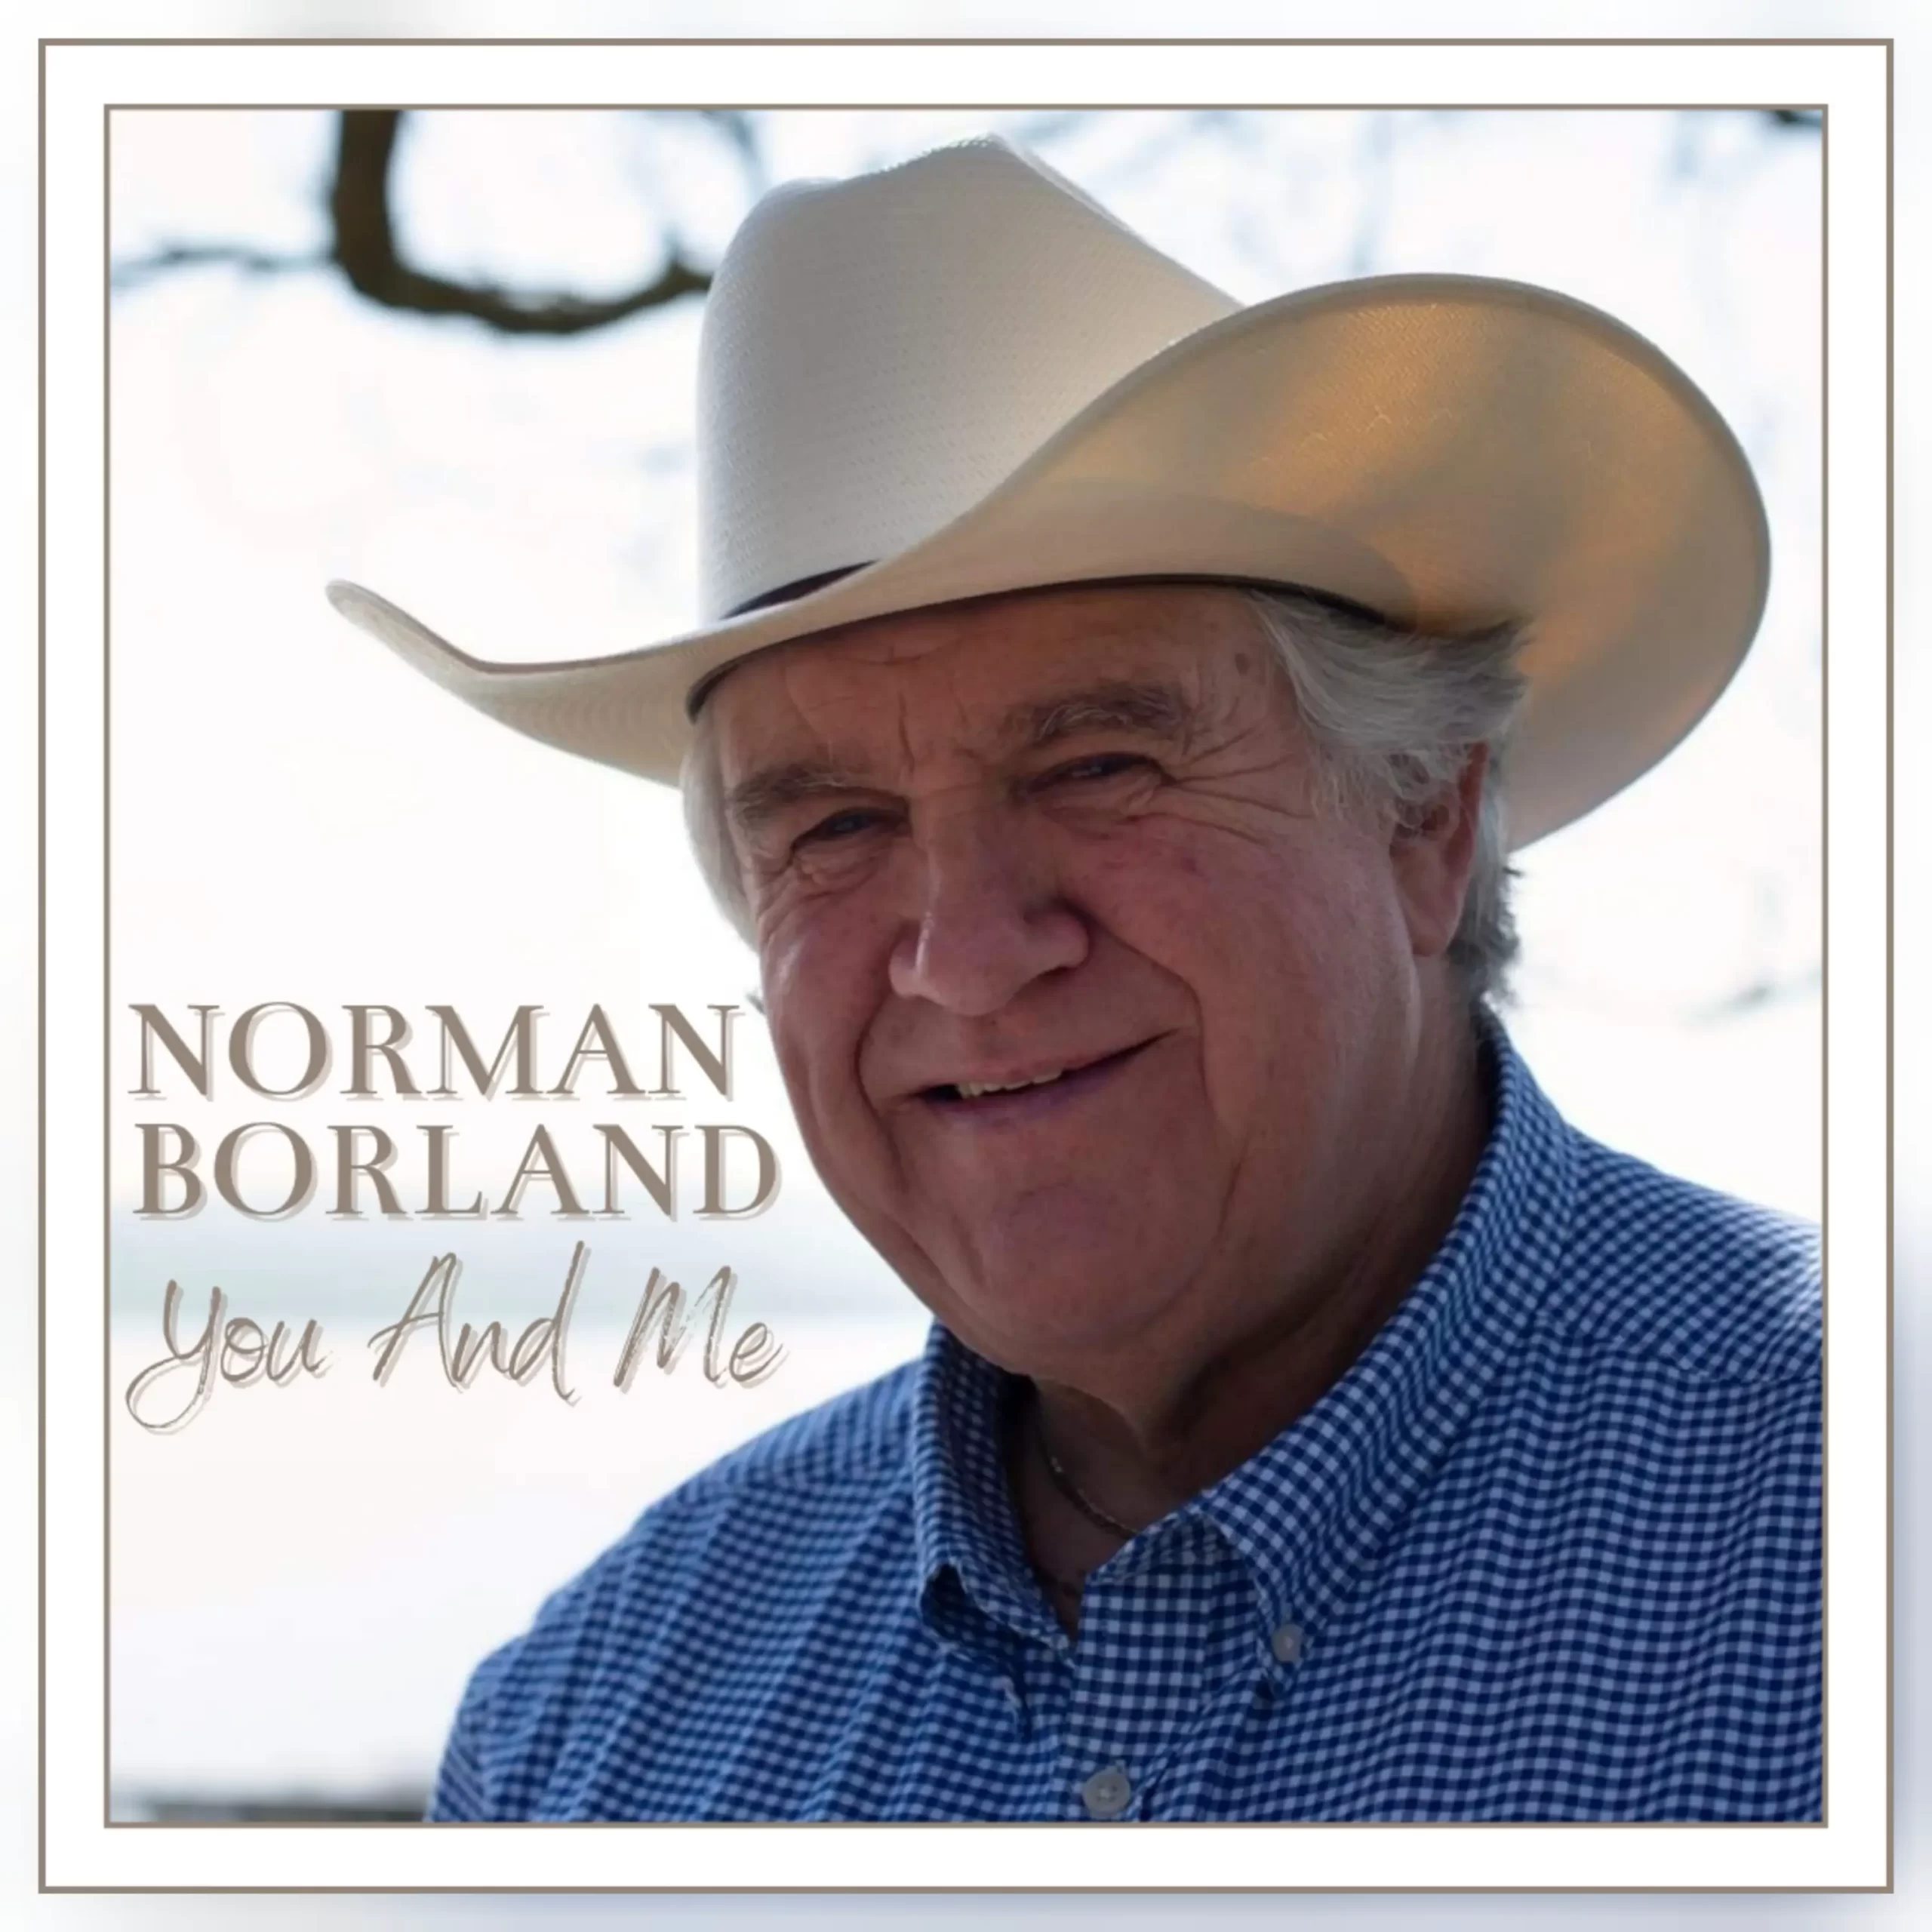 Norman Borland – You and Me